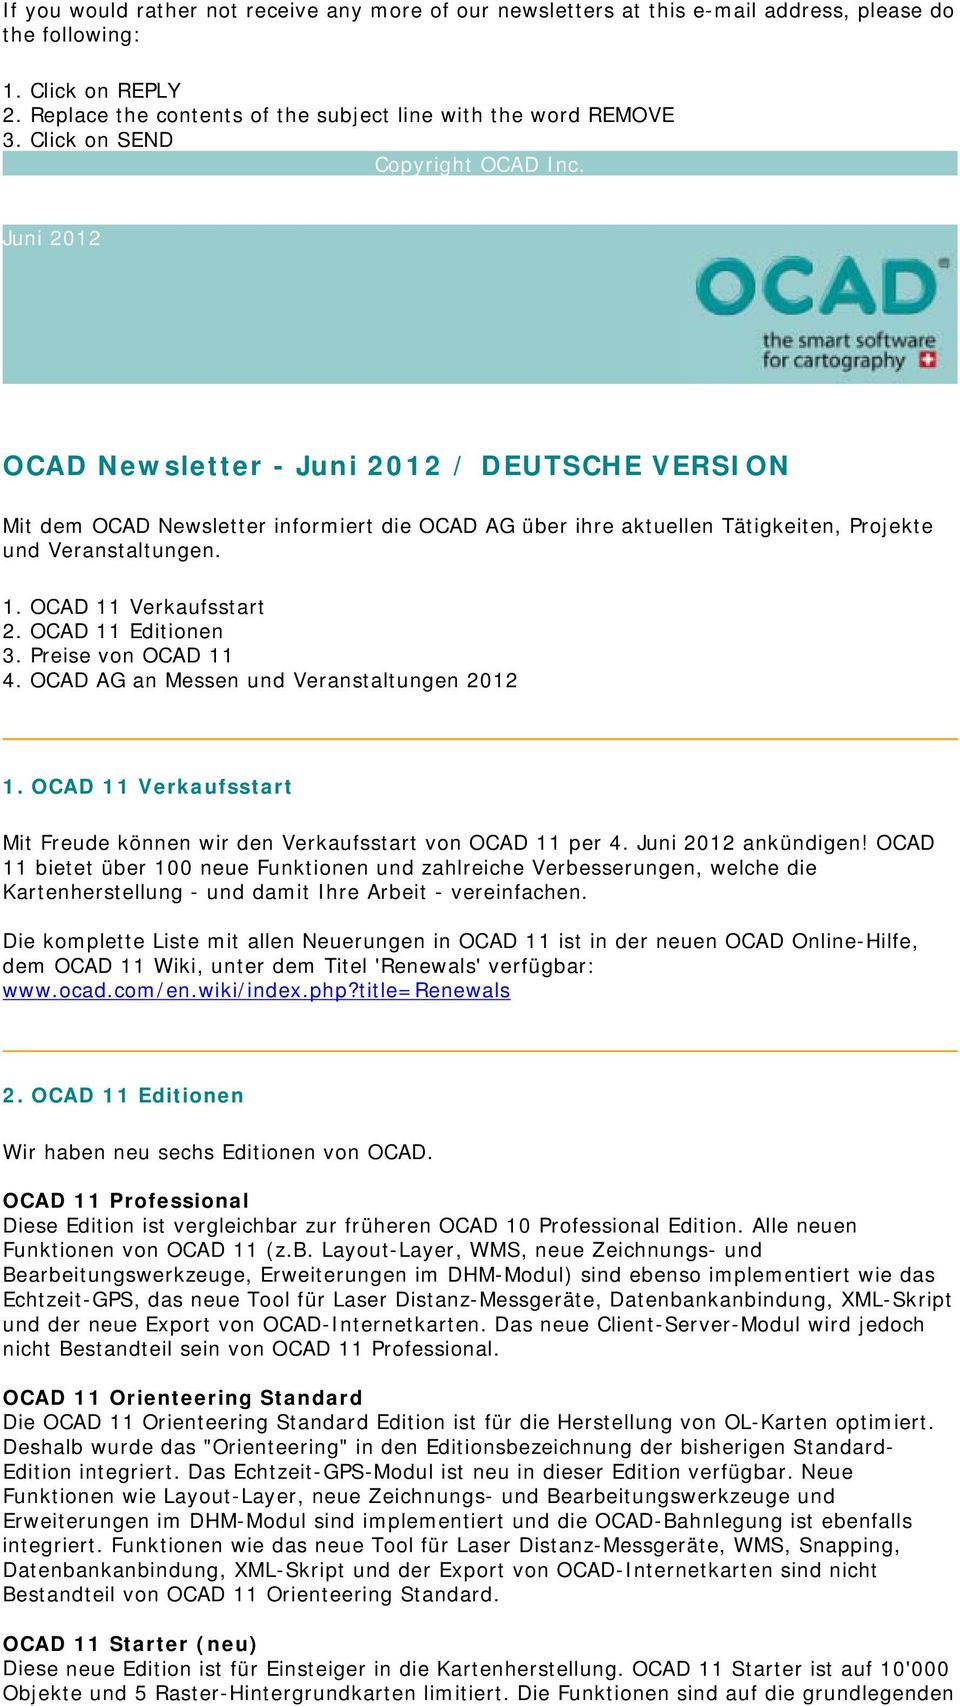 1. OCAD 11 Verkaufsstart 2. OCAD 11 Editionen 3. Preise von OCAD 11 4. OCAD AG an Messen und Veranstaltungen 2012 1. OCAD 11 Verkaufsstart Mit Freude können wir den Verkaufsstart von OCAD 11 per 4.